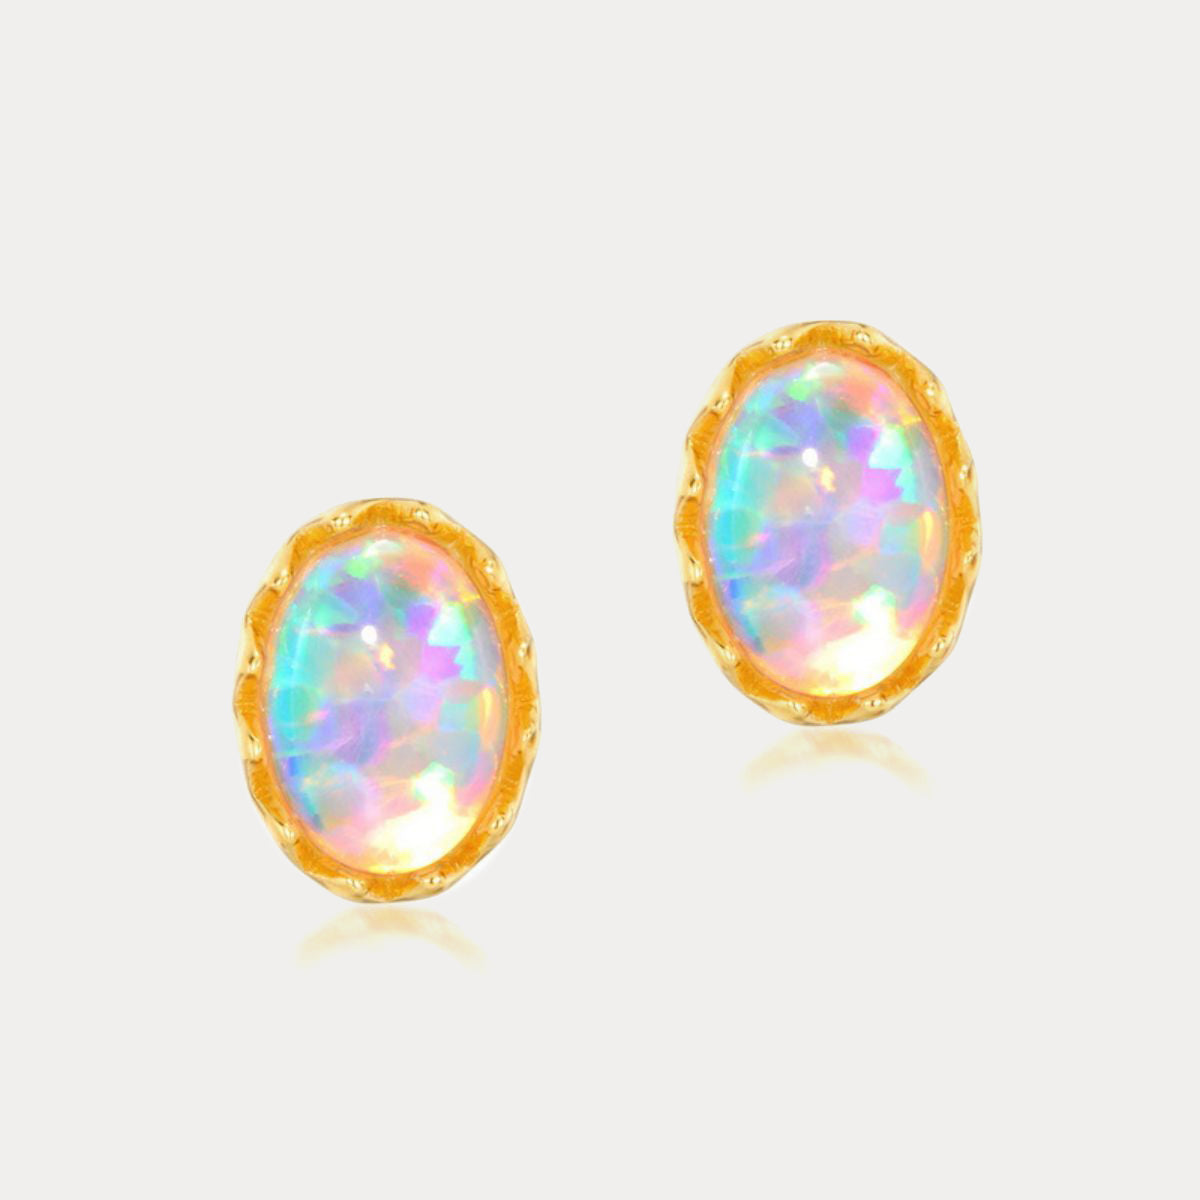 Selenichast opal stud earrings